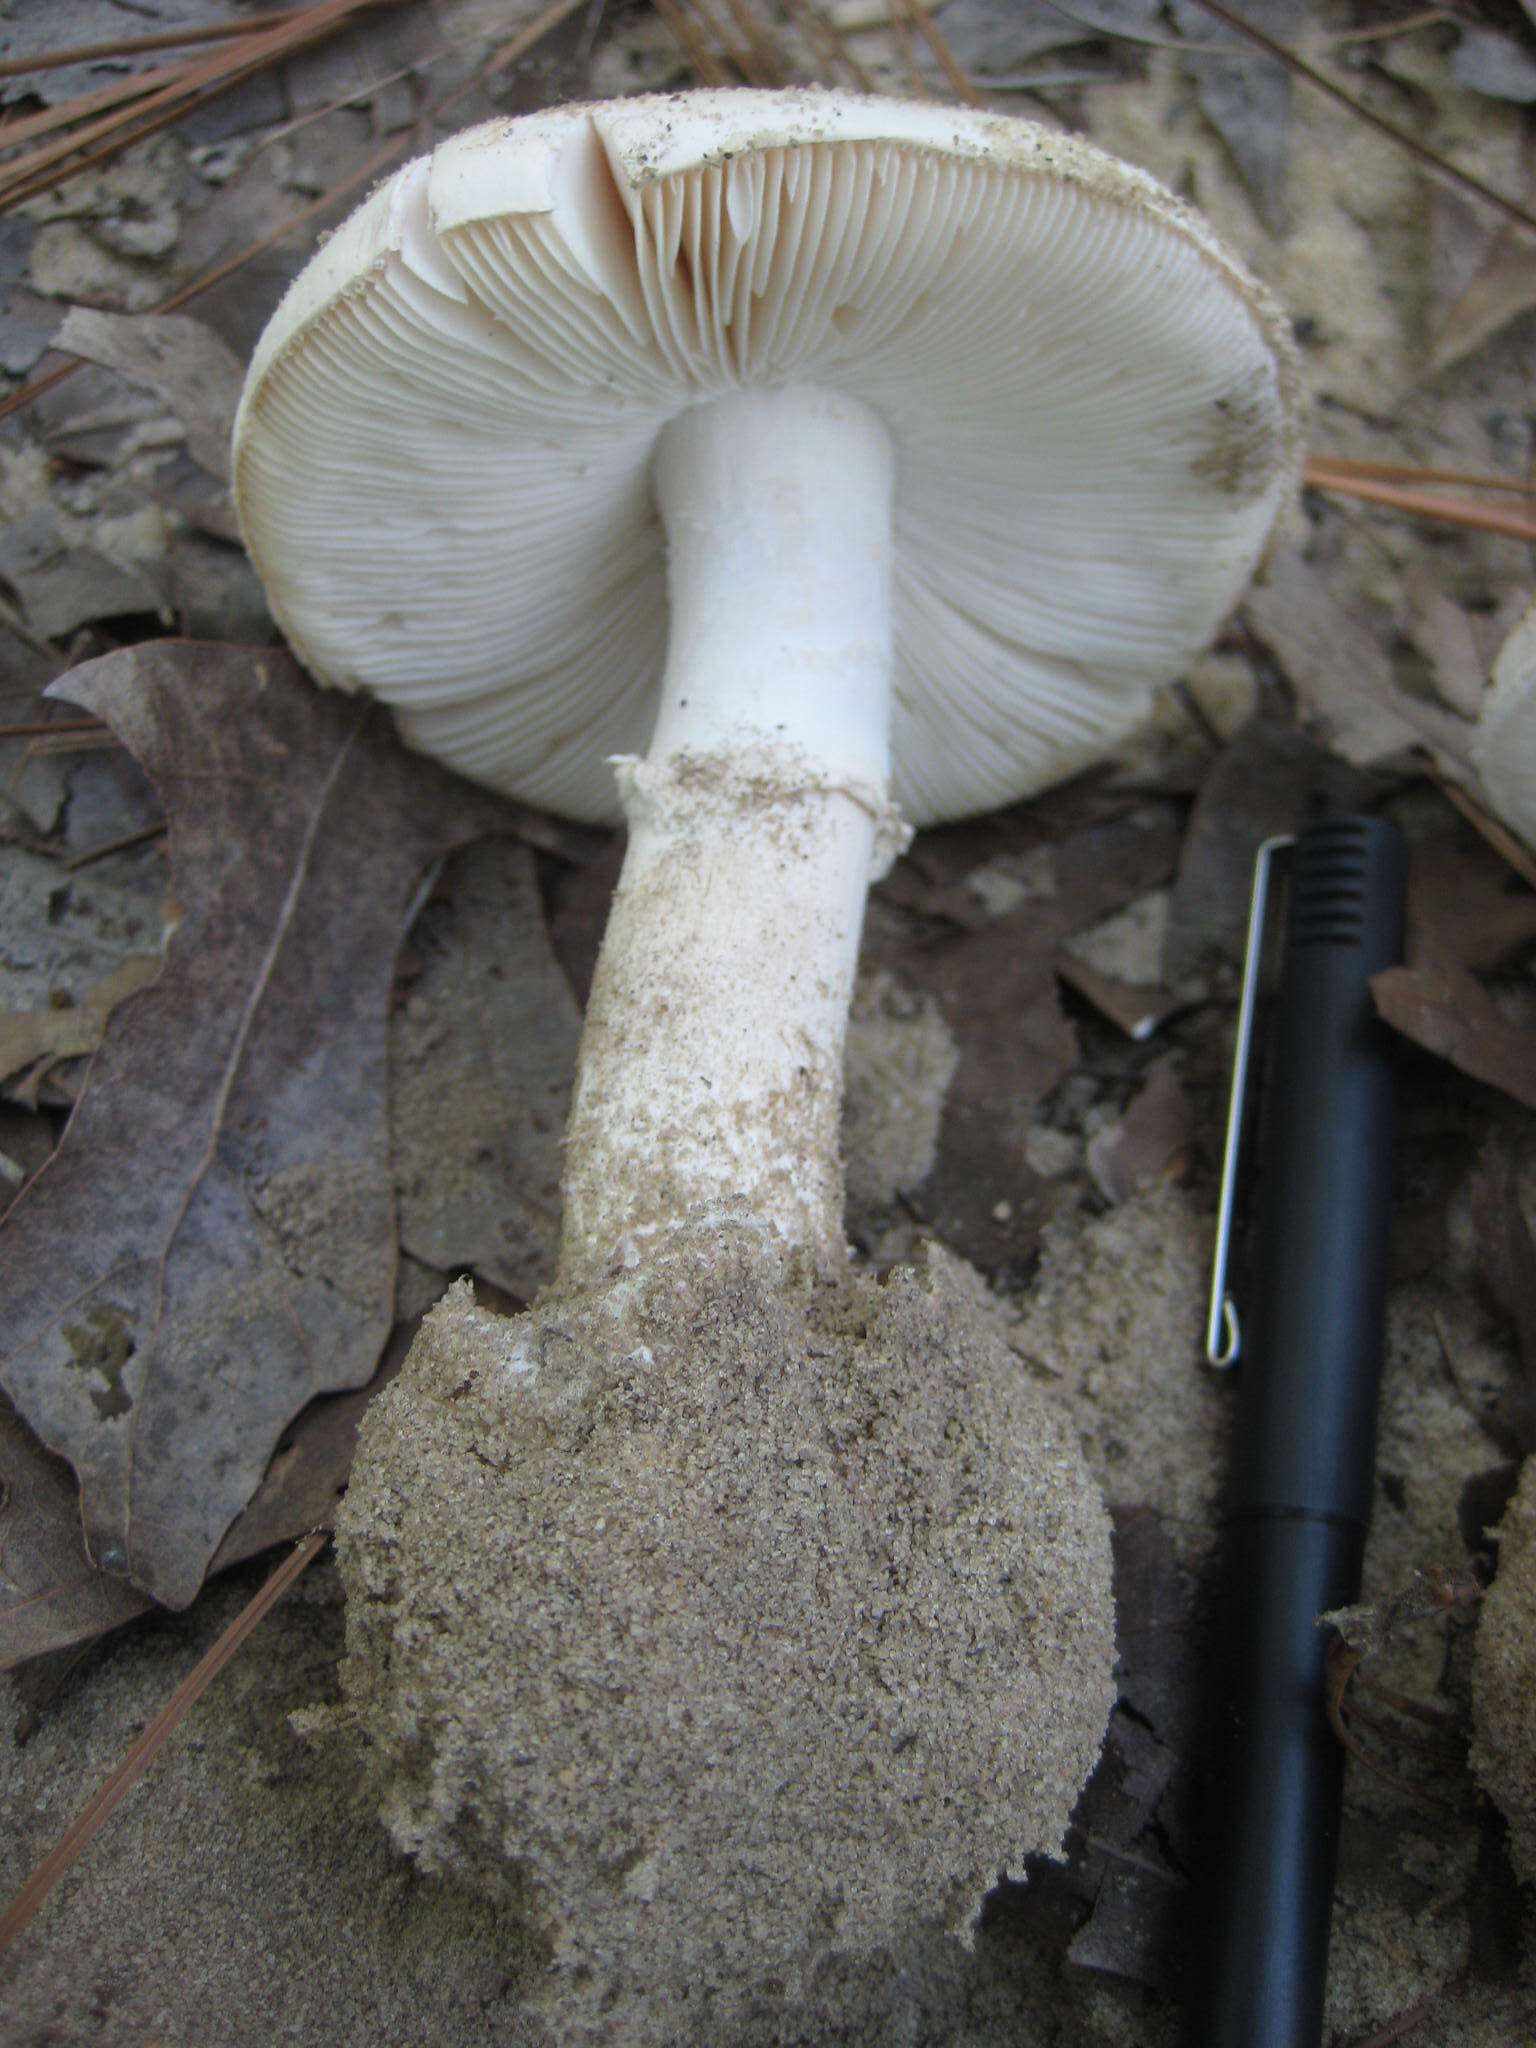 Image of Fool's Mushroom